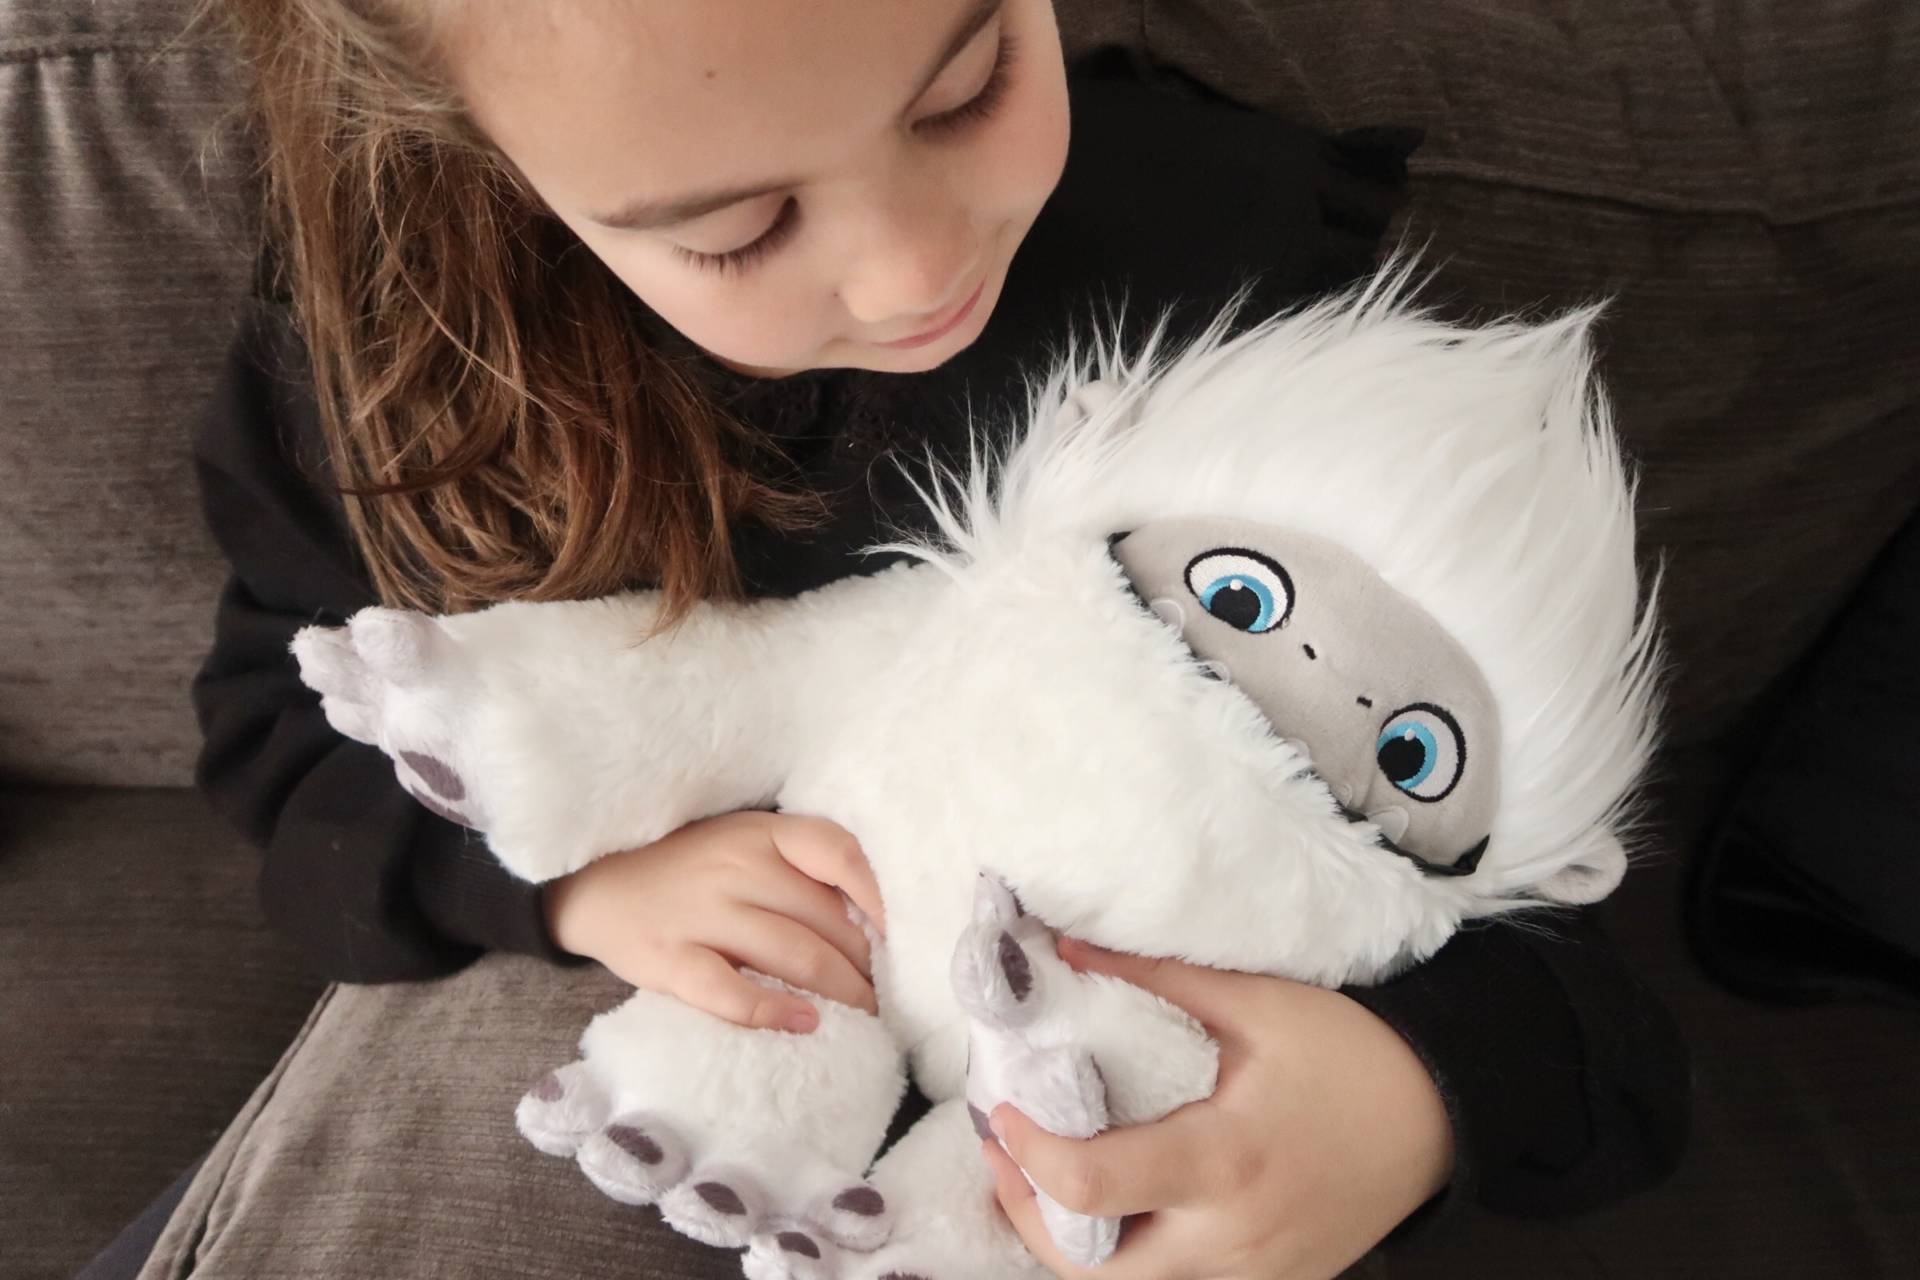 child cuddling fluffy yeti toy